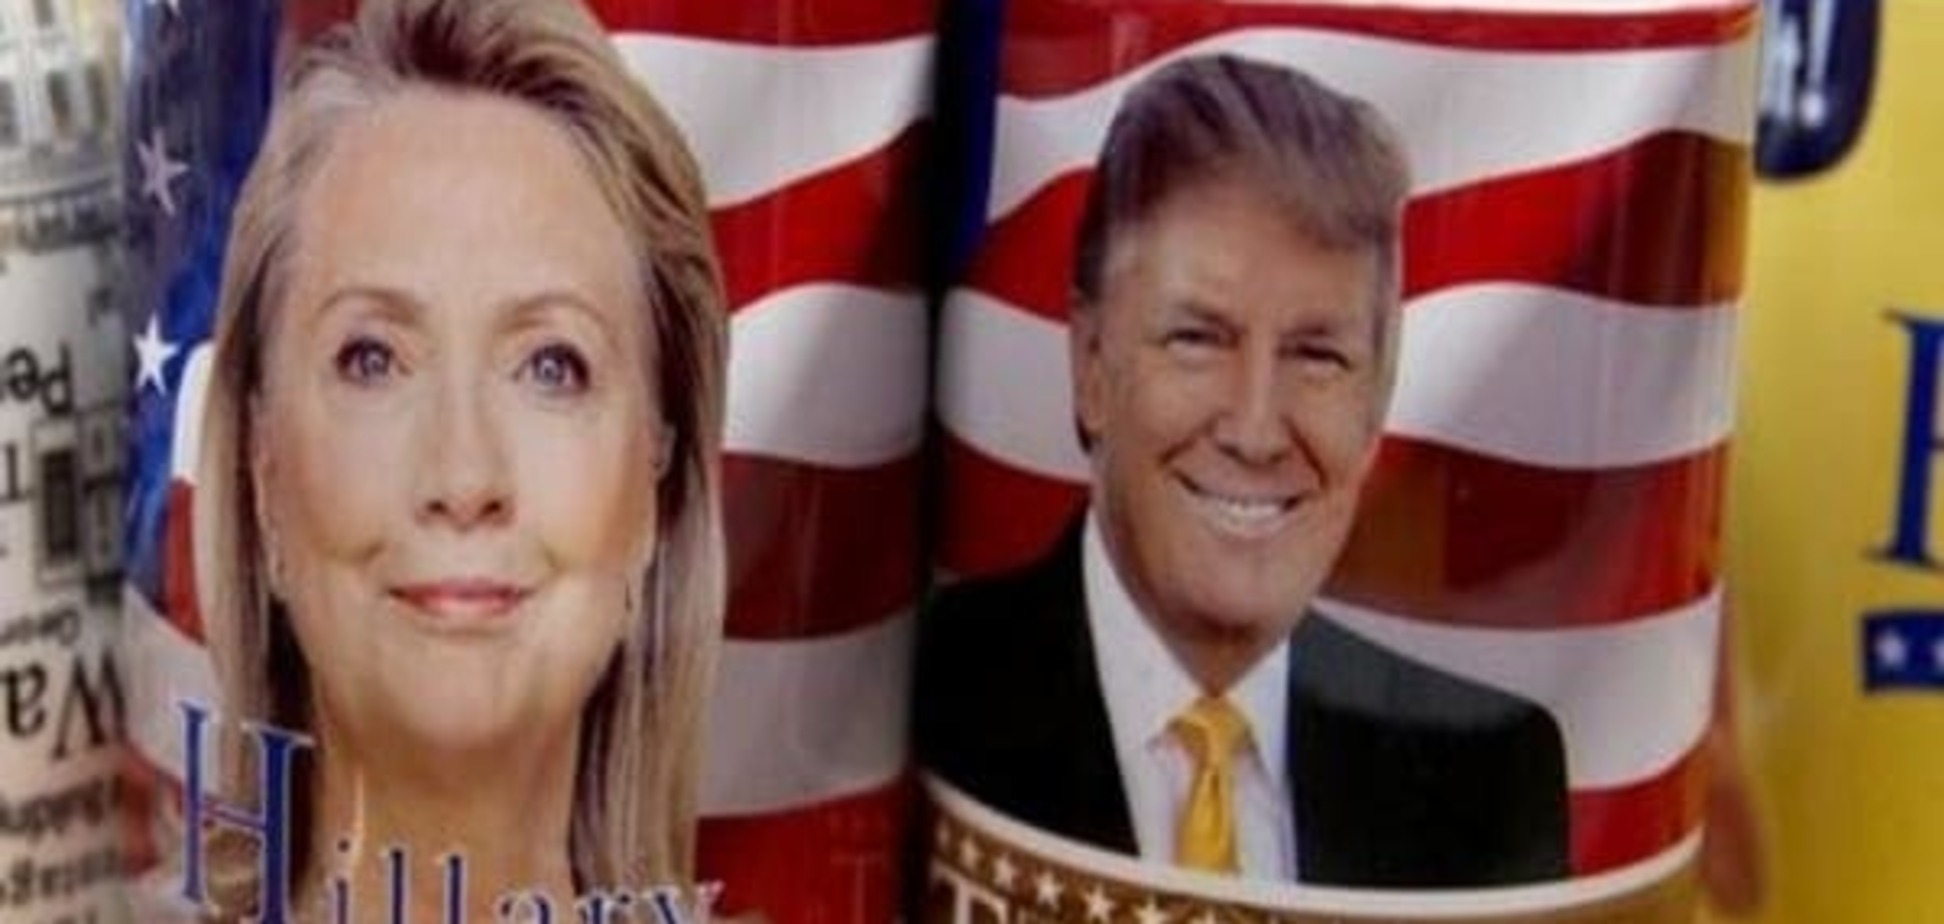 Сможет ли Клинтон победить Трампа: эксперты оценили шансы кандидатов на выборах в США